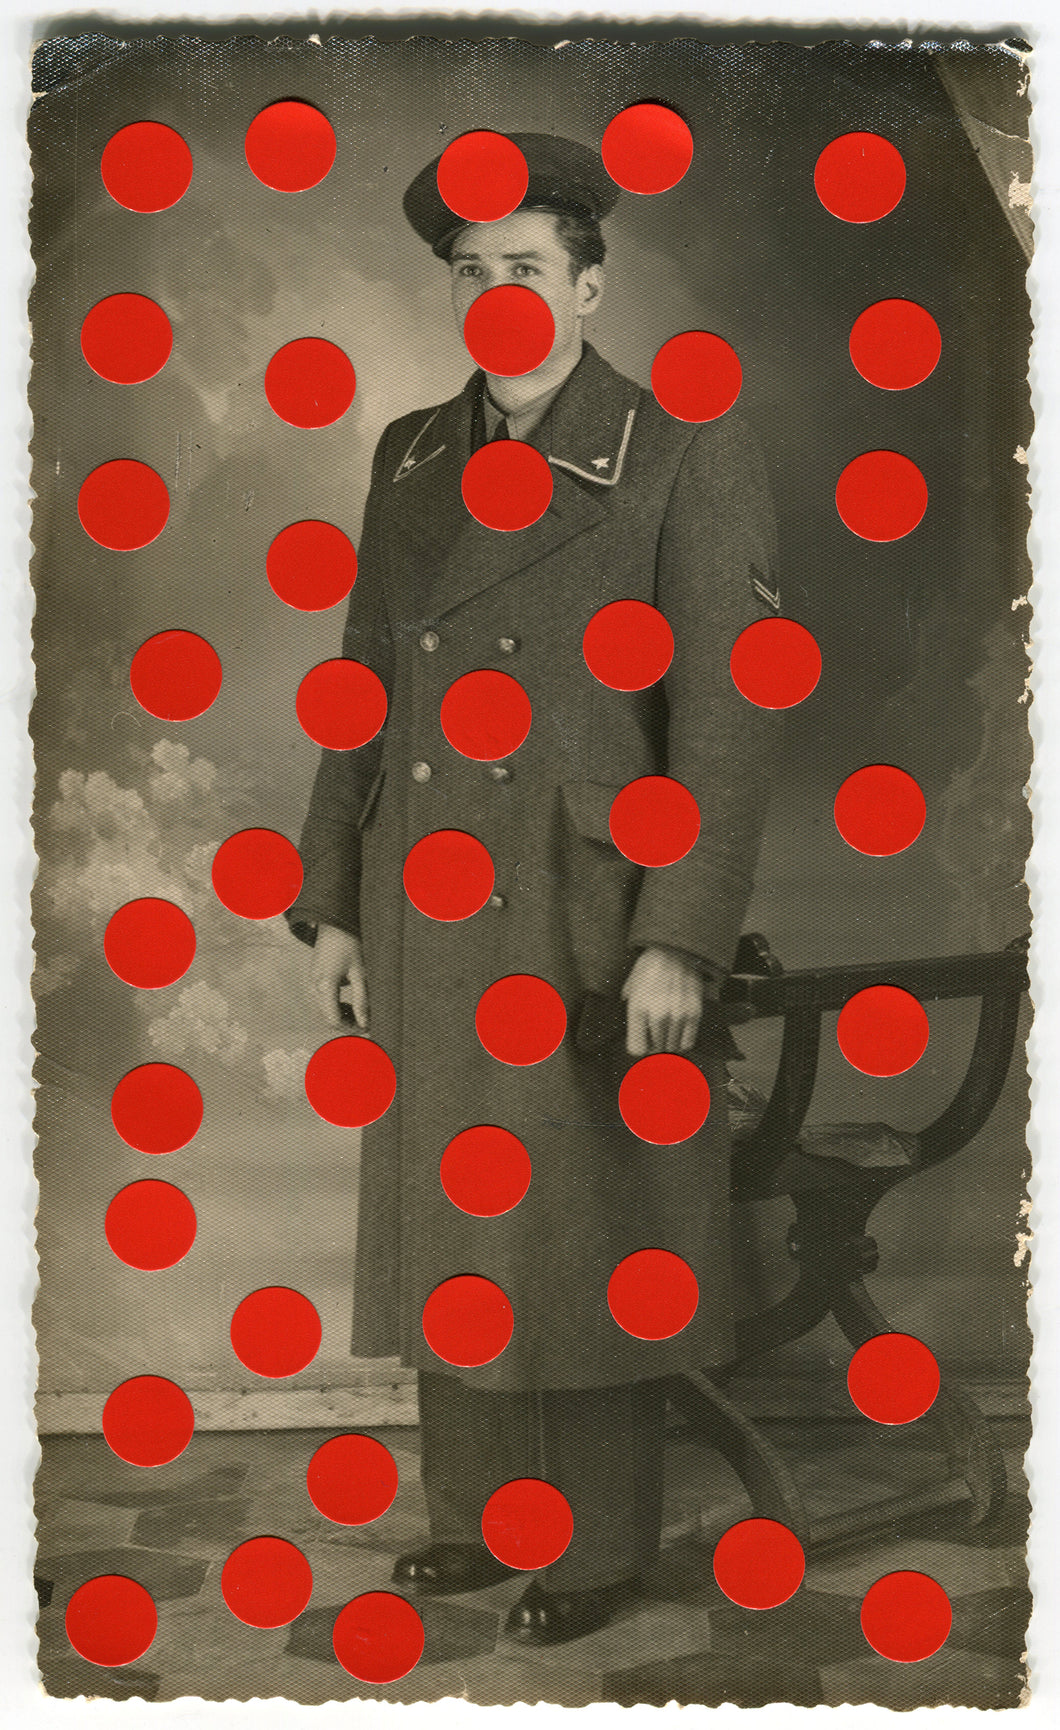 Vintage Man In Uniform Studio Portrait Altered With Dotty Red Stickers - Naomi Vona Art